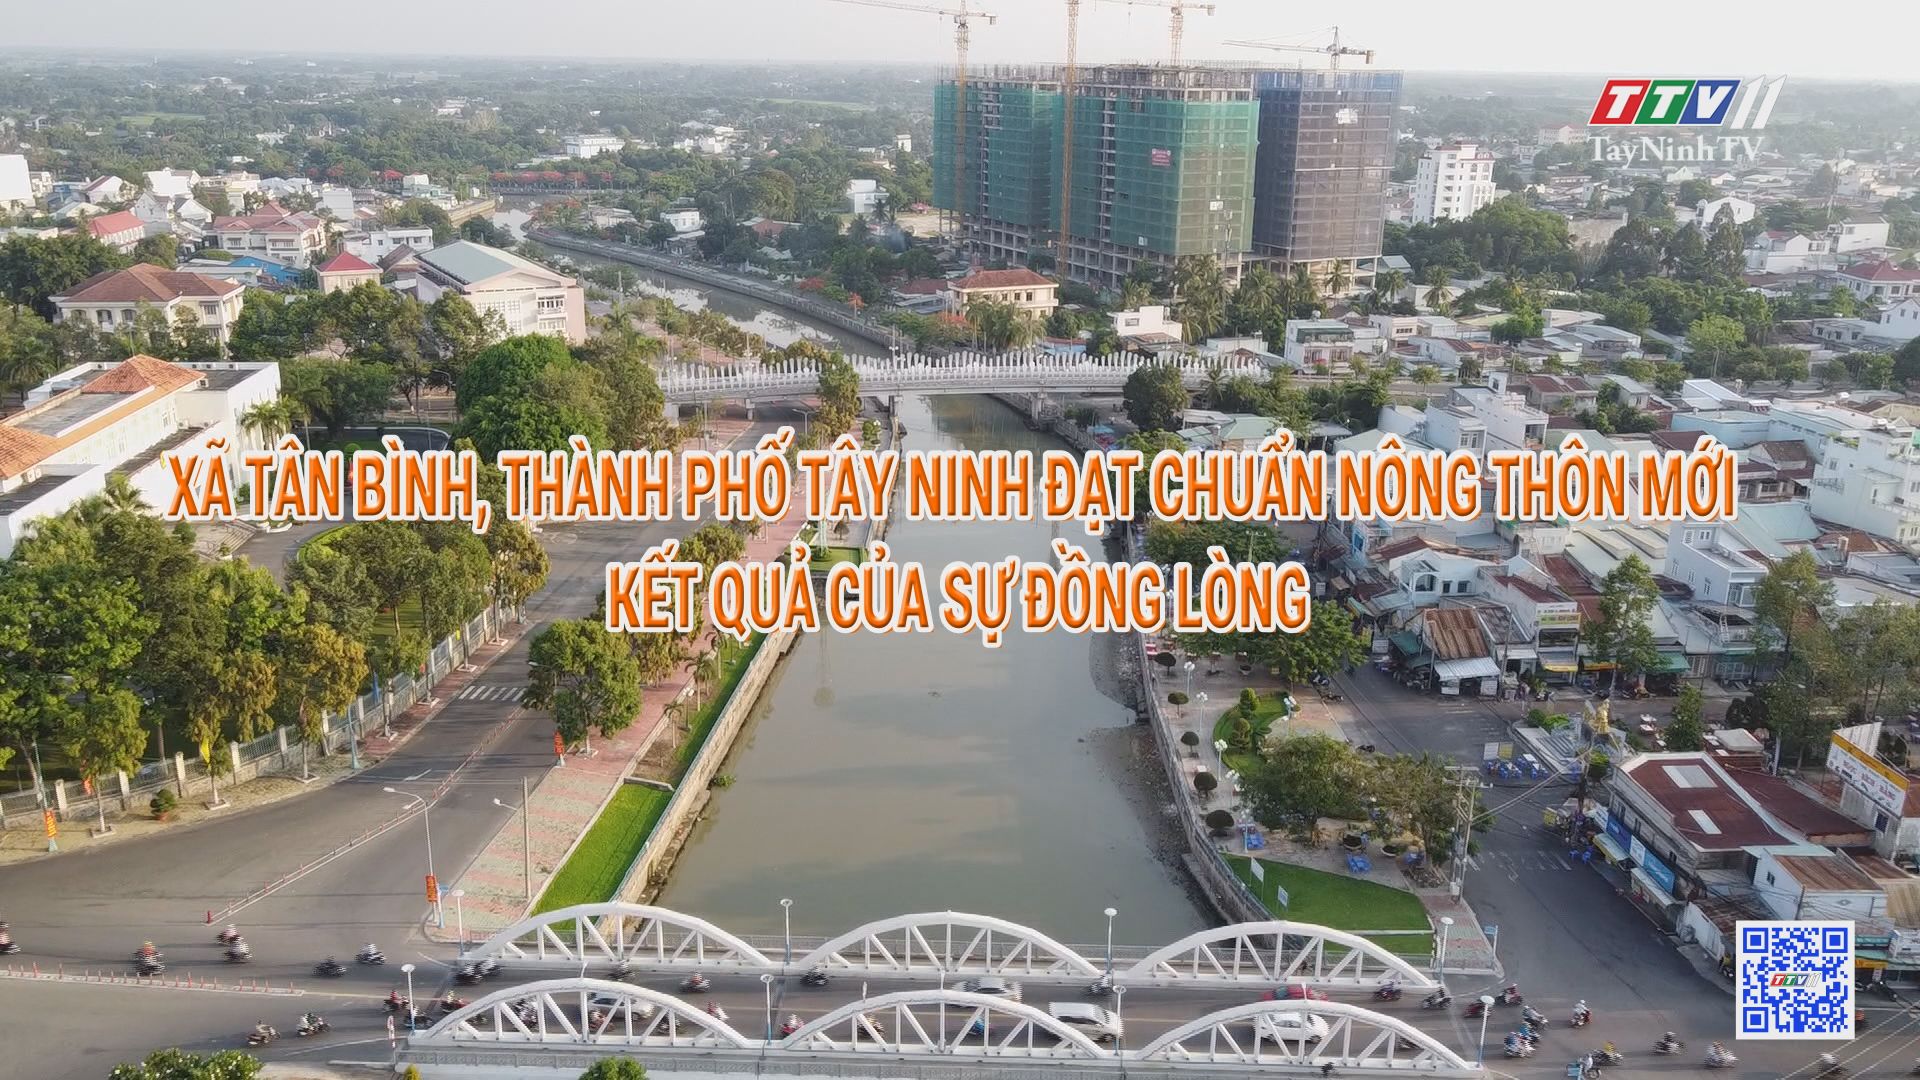 Tiên Thuận hướng tới xây dựng xã nông thôn mới bền vững, kiểu mẫu | THÔNG TIN TỪ CƠ SỞ | TayNinhTV